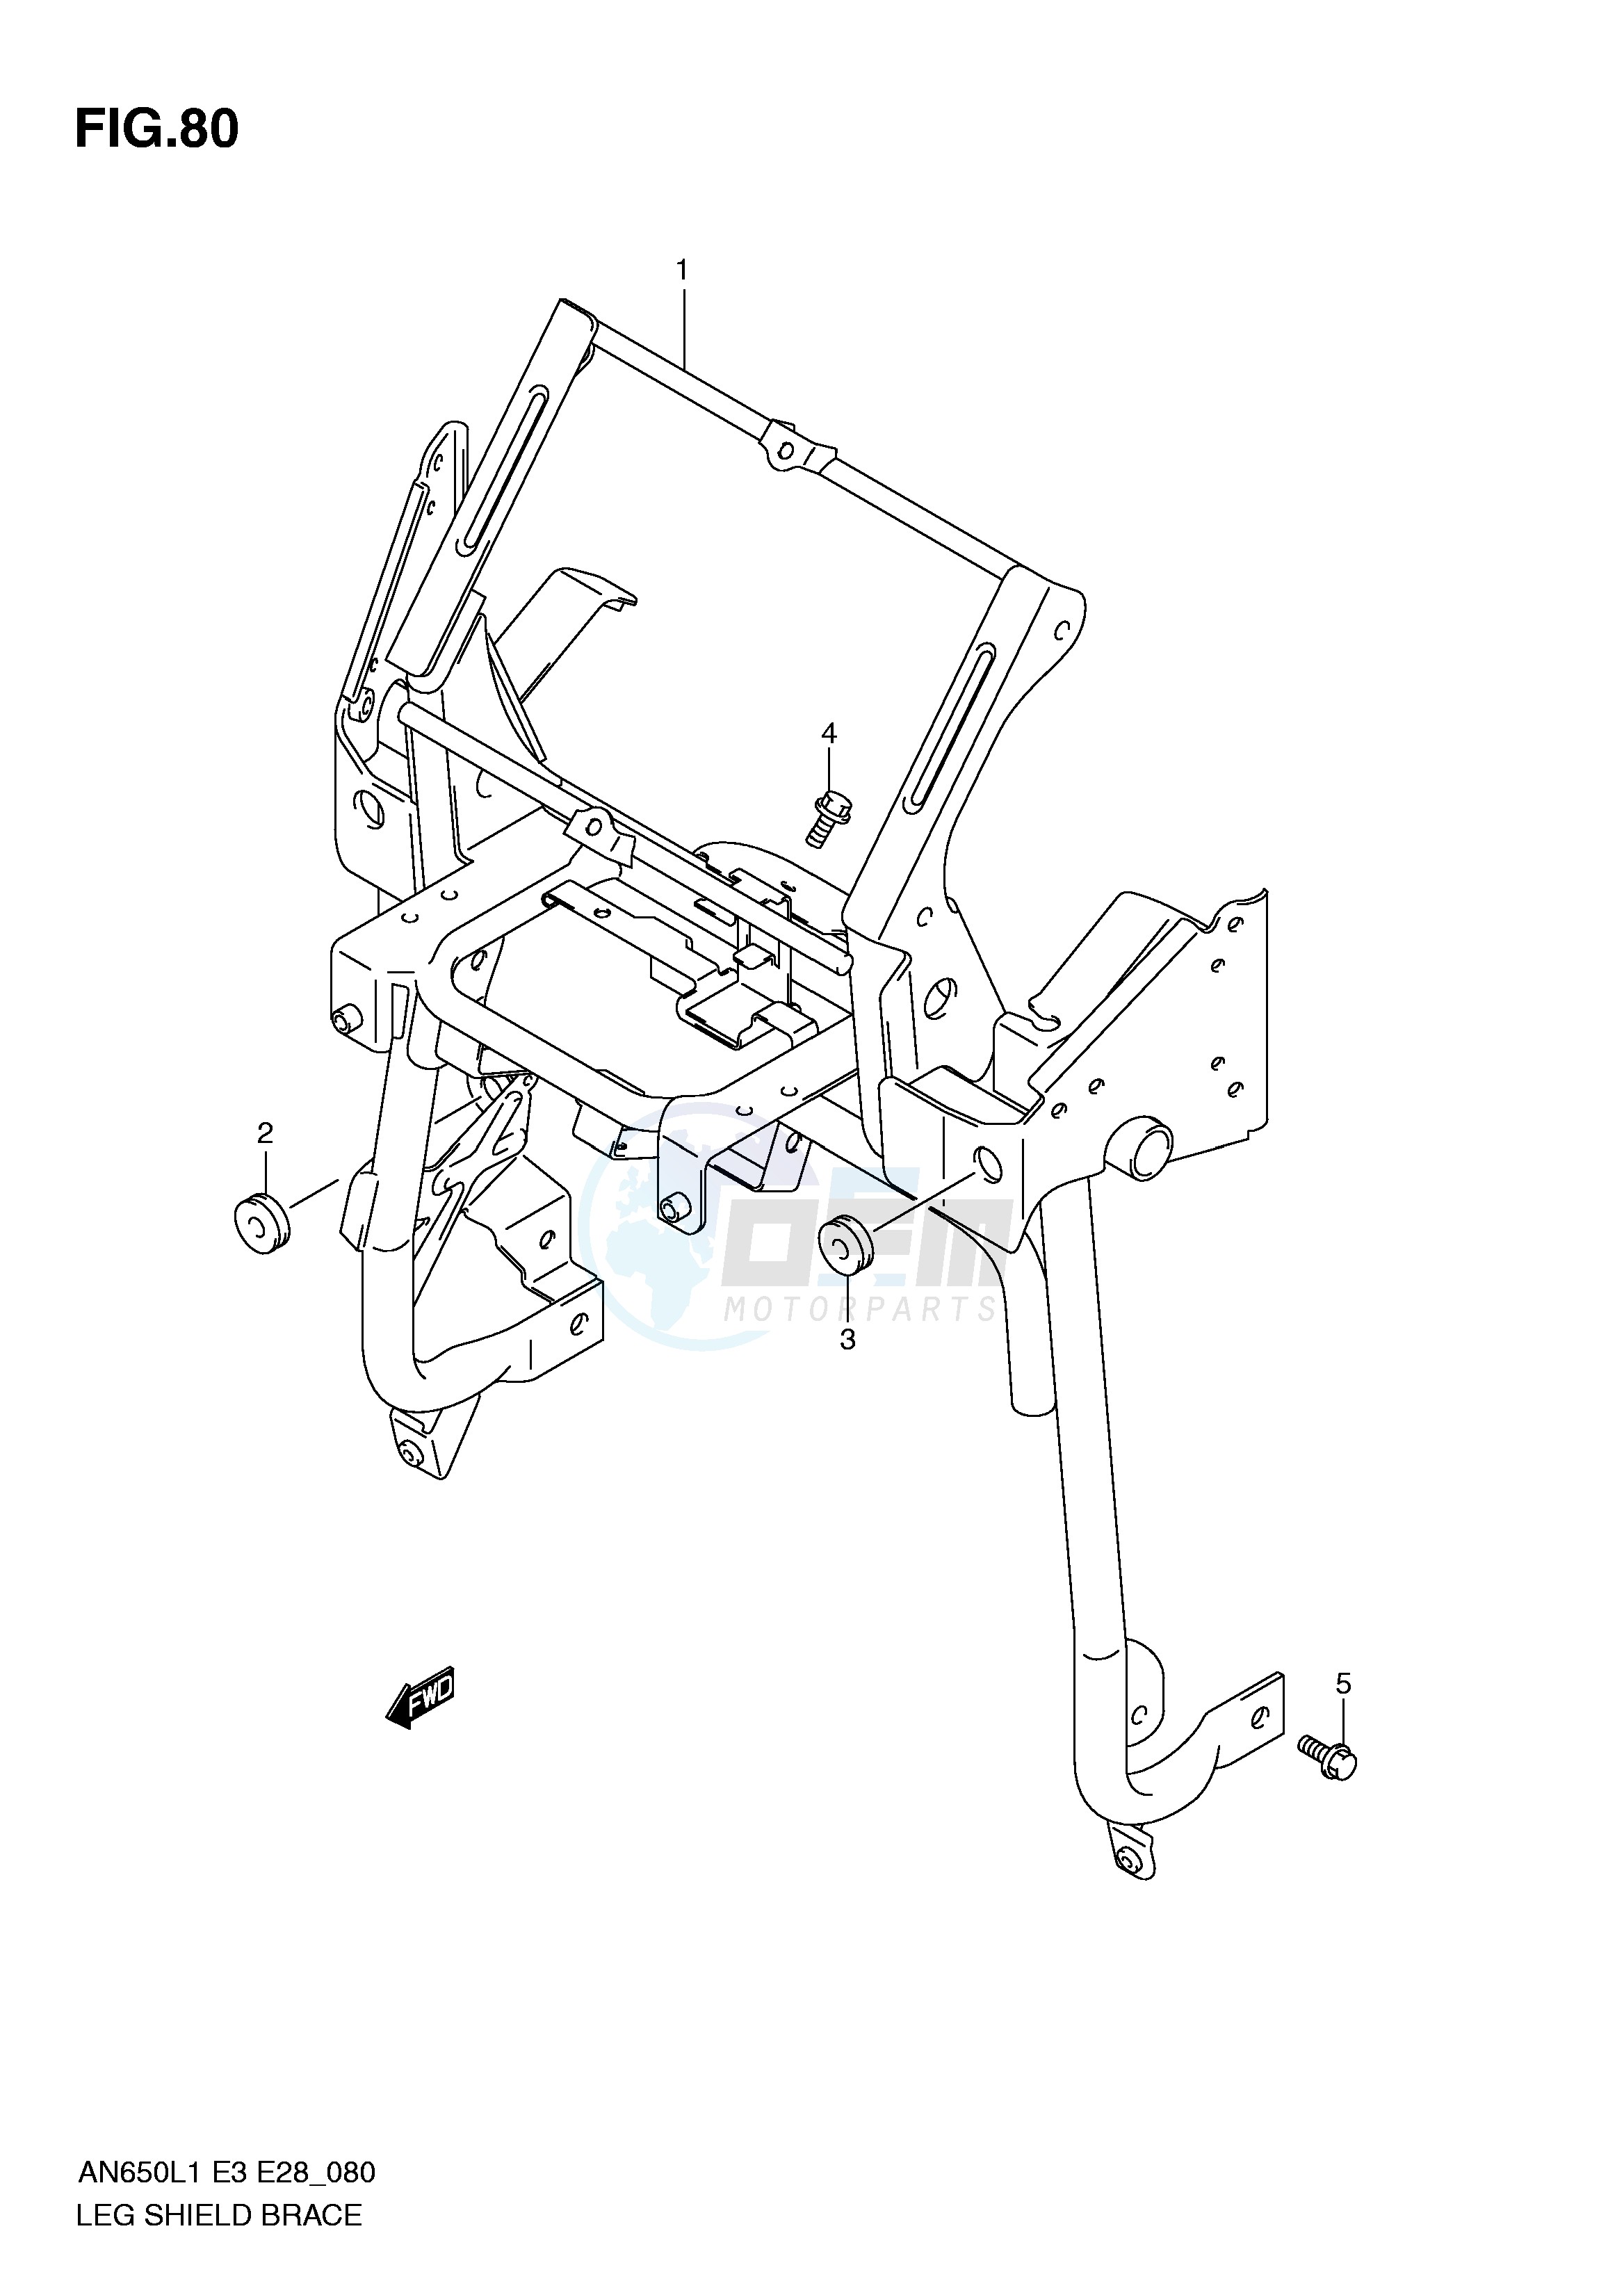 LEG SHIELD BRACE (AN650AL1 E28) blueprint